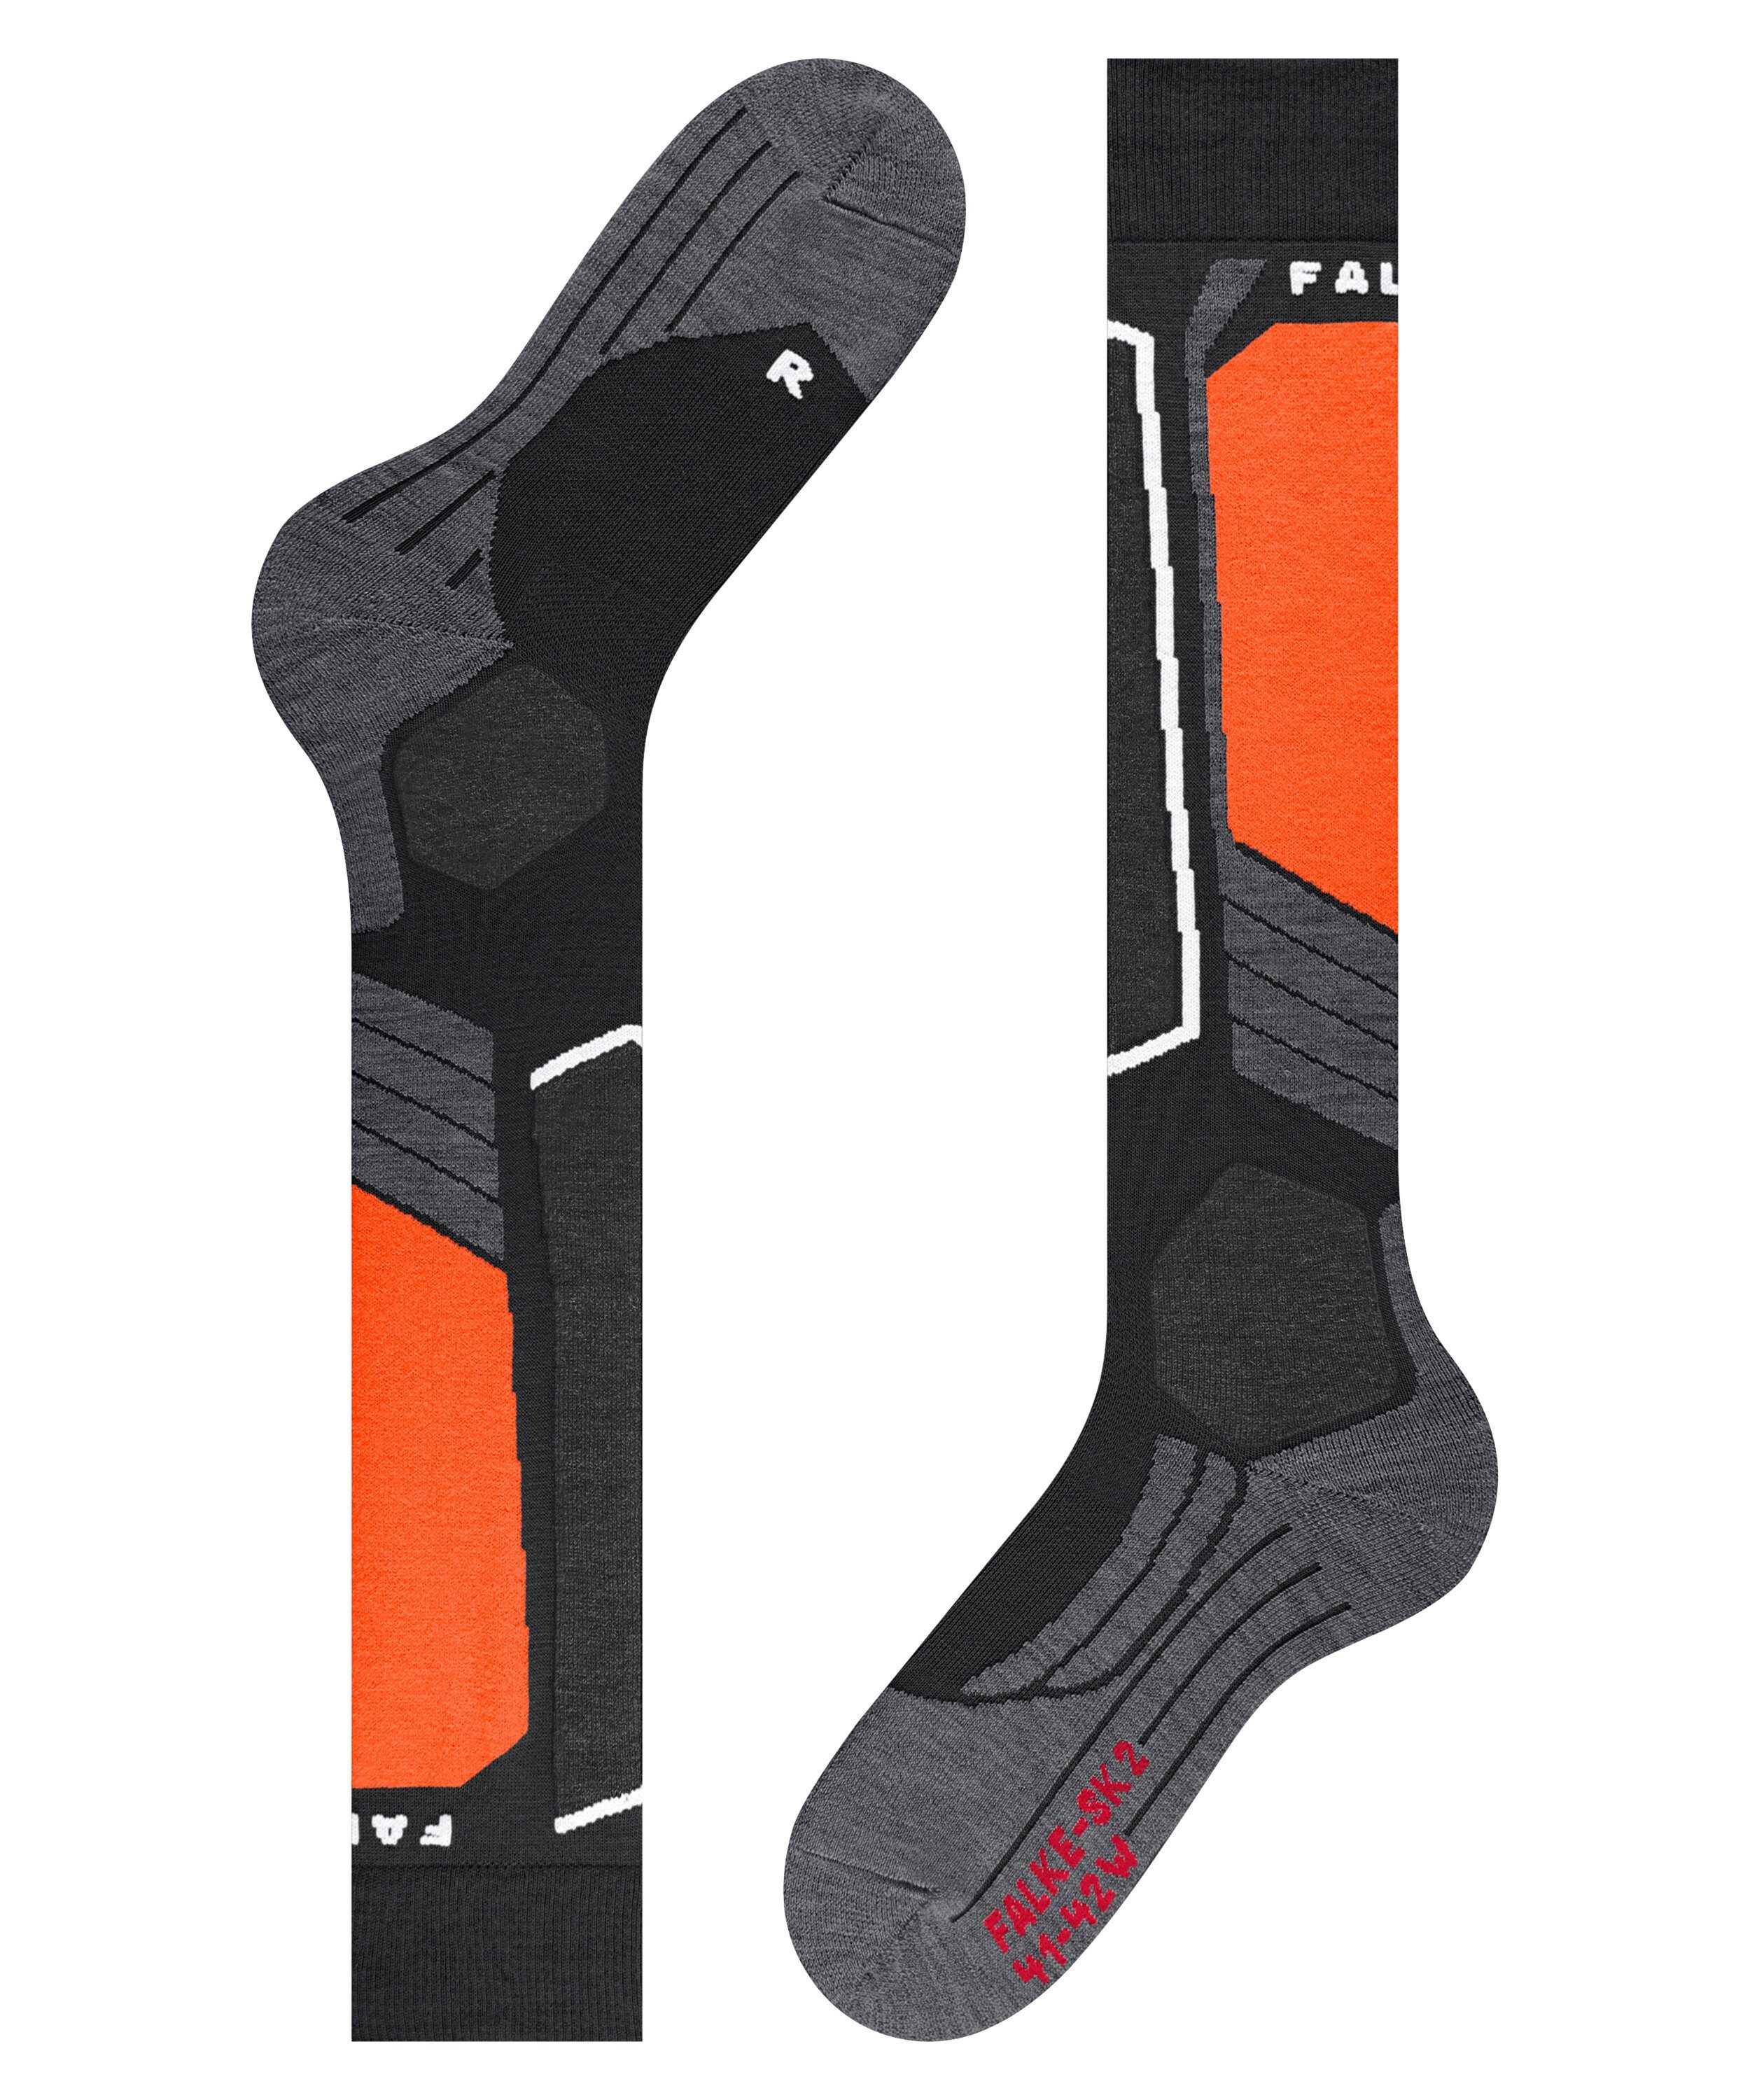 (1-Paar) Polsterung Intermediate (3008) FALKE SK2 black mit Skisocken Komfort für mittelstarker Kontrolle und